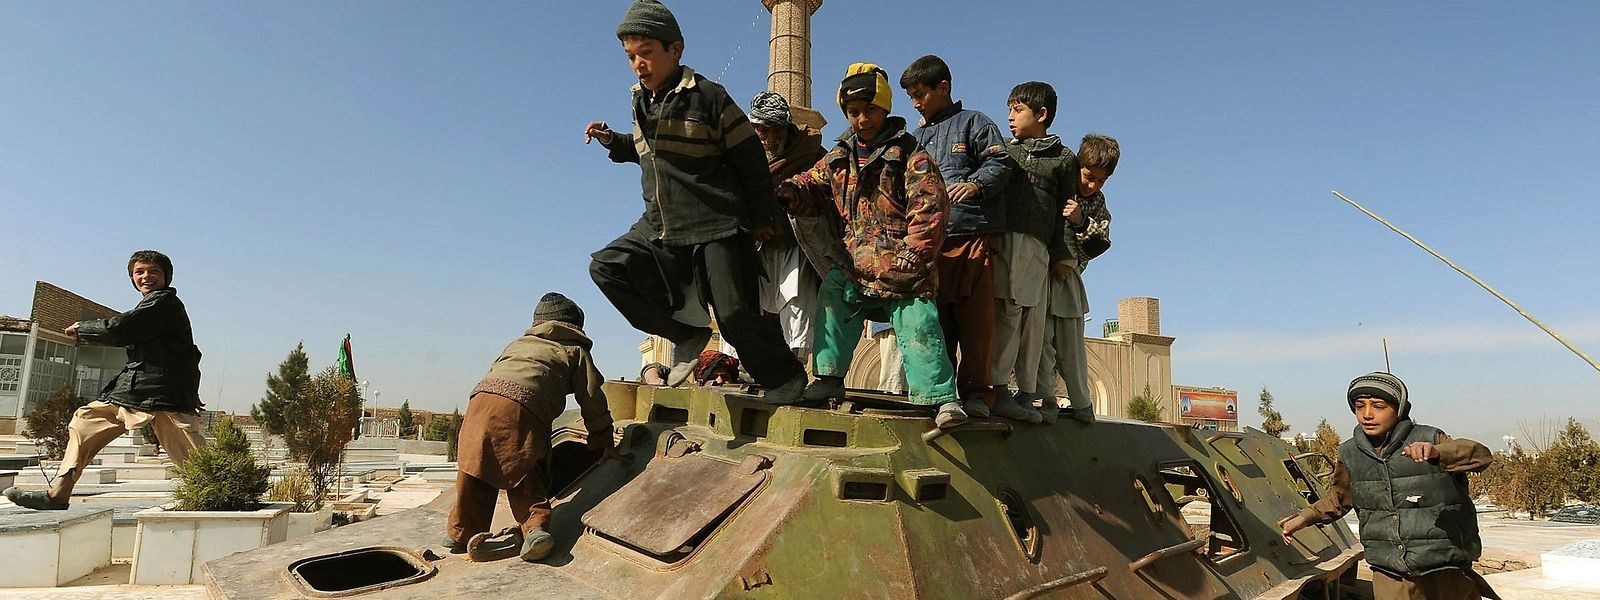 Afghanische Kinder spielen auf Kriegsgerät aus der Sowjetära.